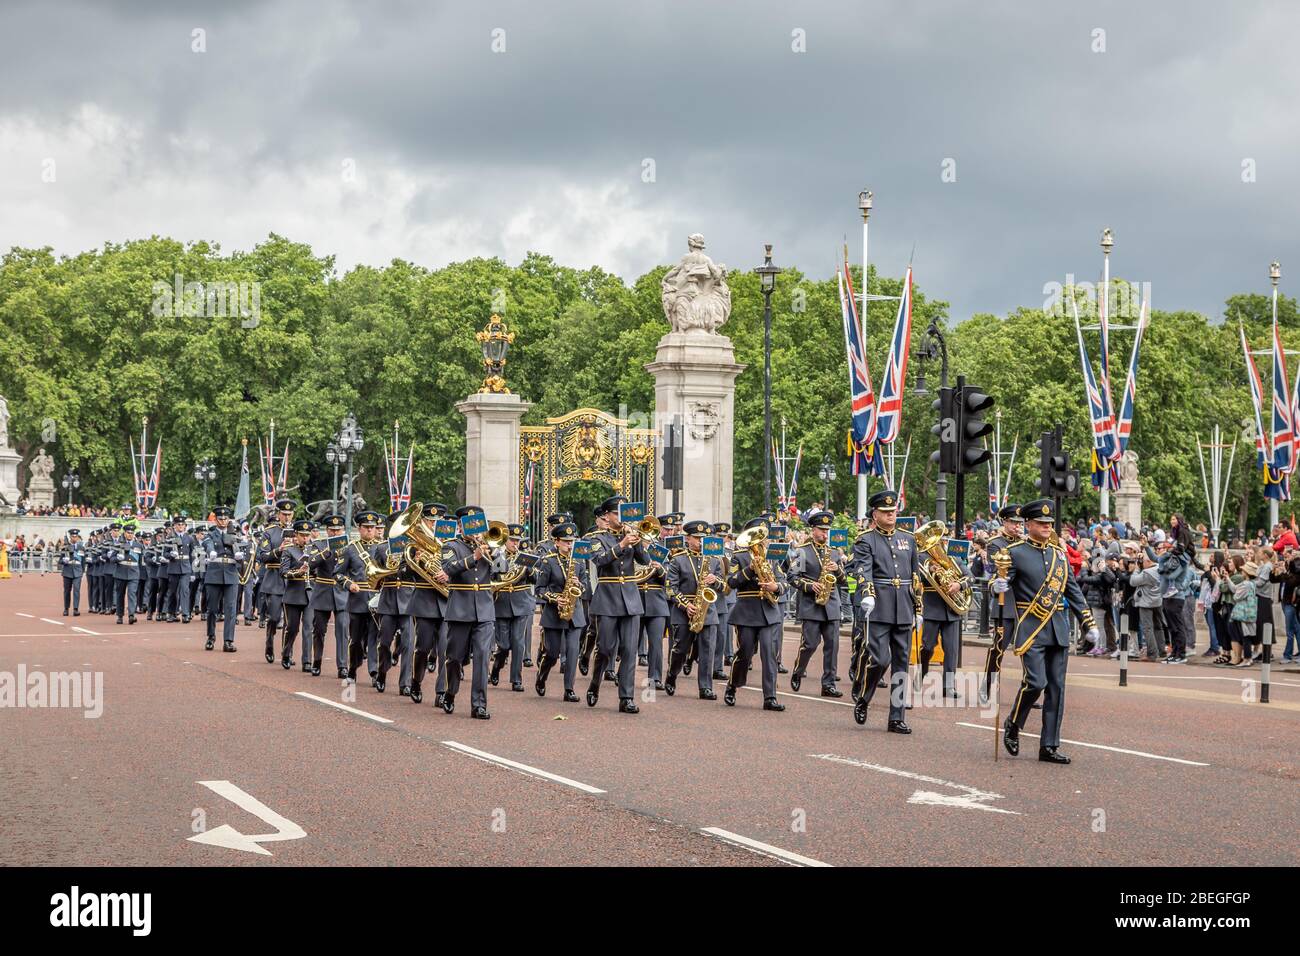 La banda Central de la Real Fuerza Aérea marchan fuera del Palacio de Buckingham después de la ceremonia del Cambio de la Guardia, Spur Road, Londres, Reino Unido Foto de stock